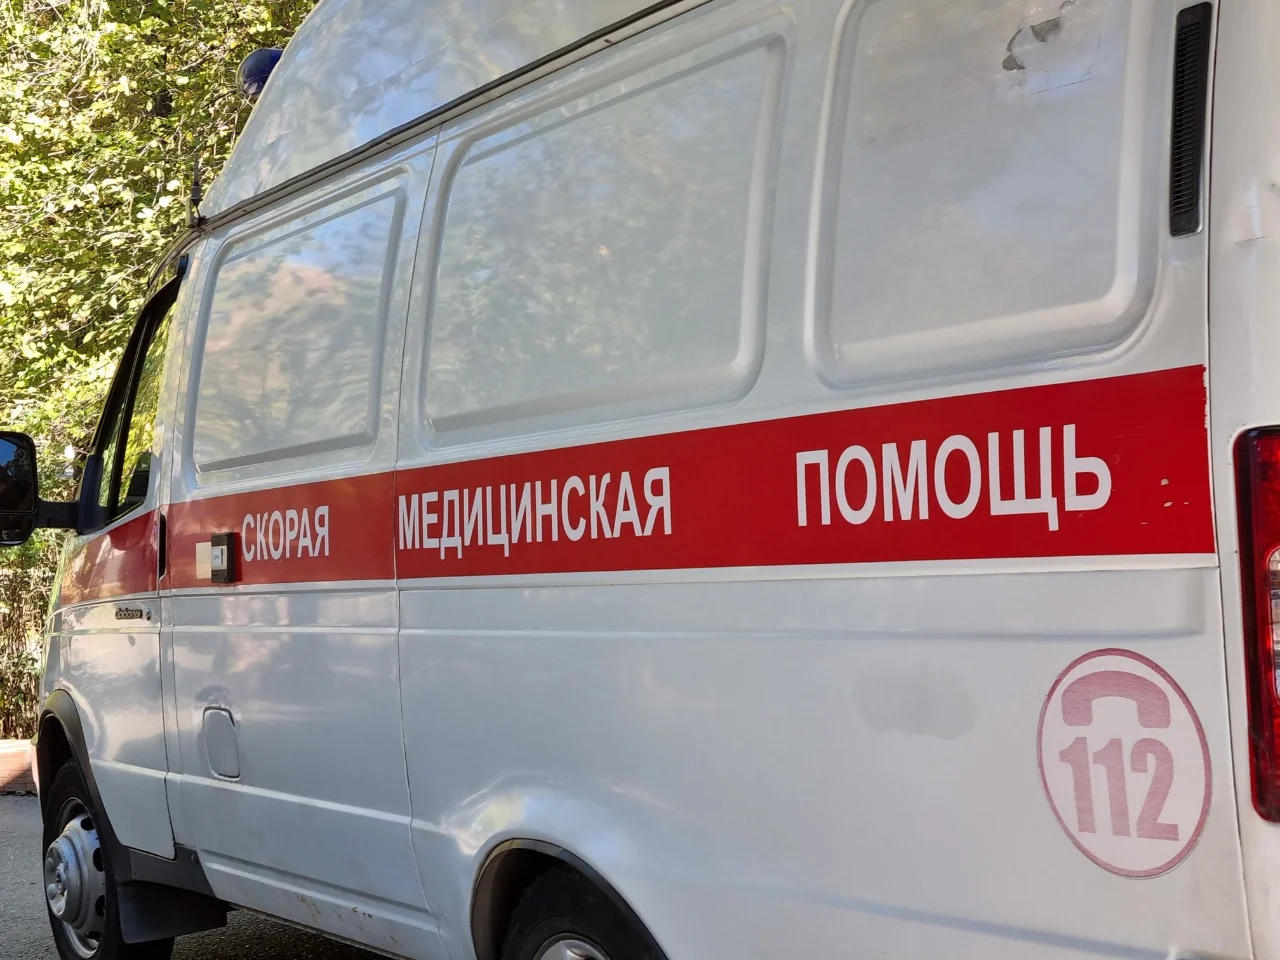 Пошла пена: Мужчина умер при задержании в Ростовской области